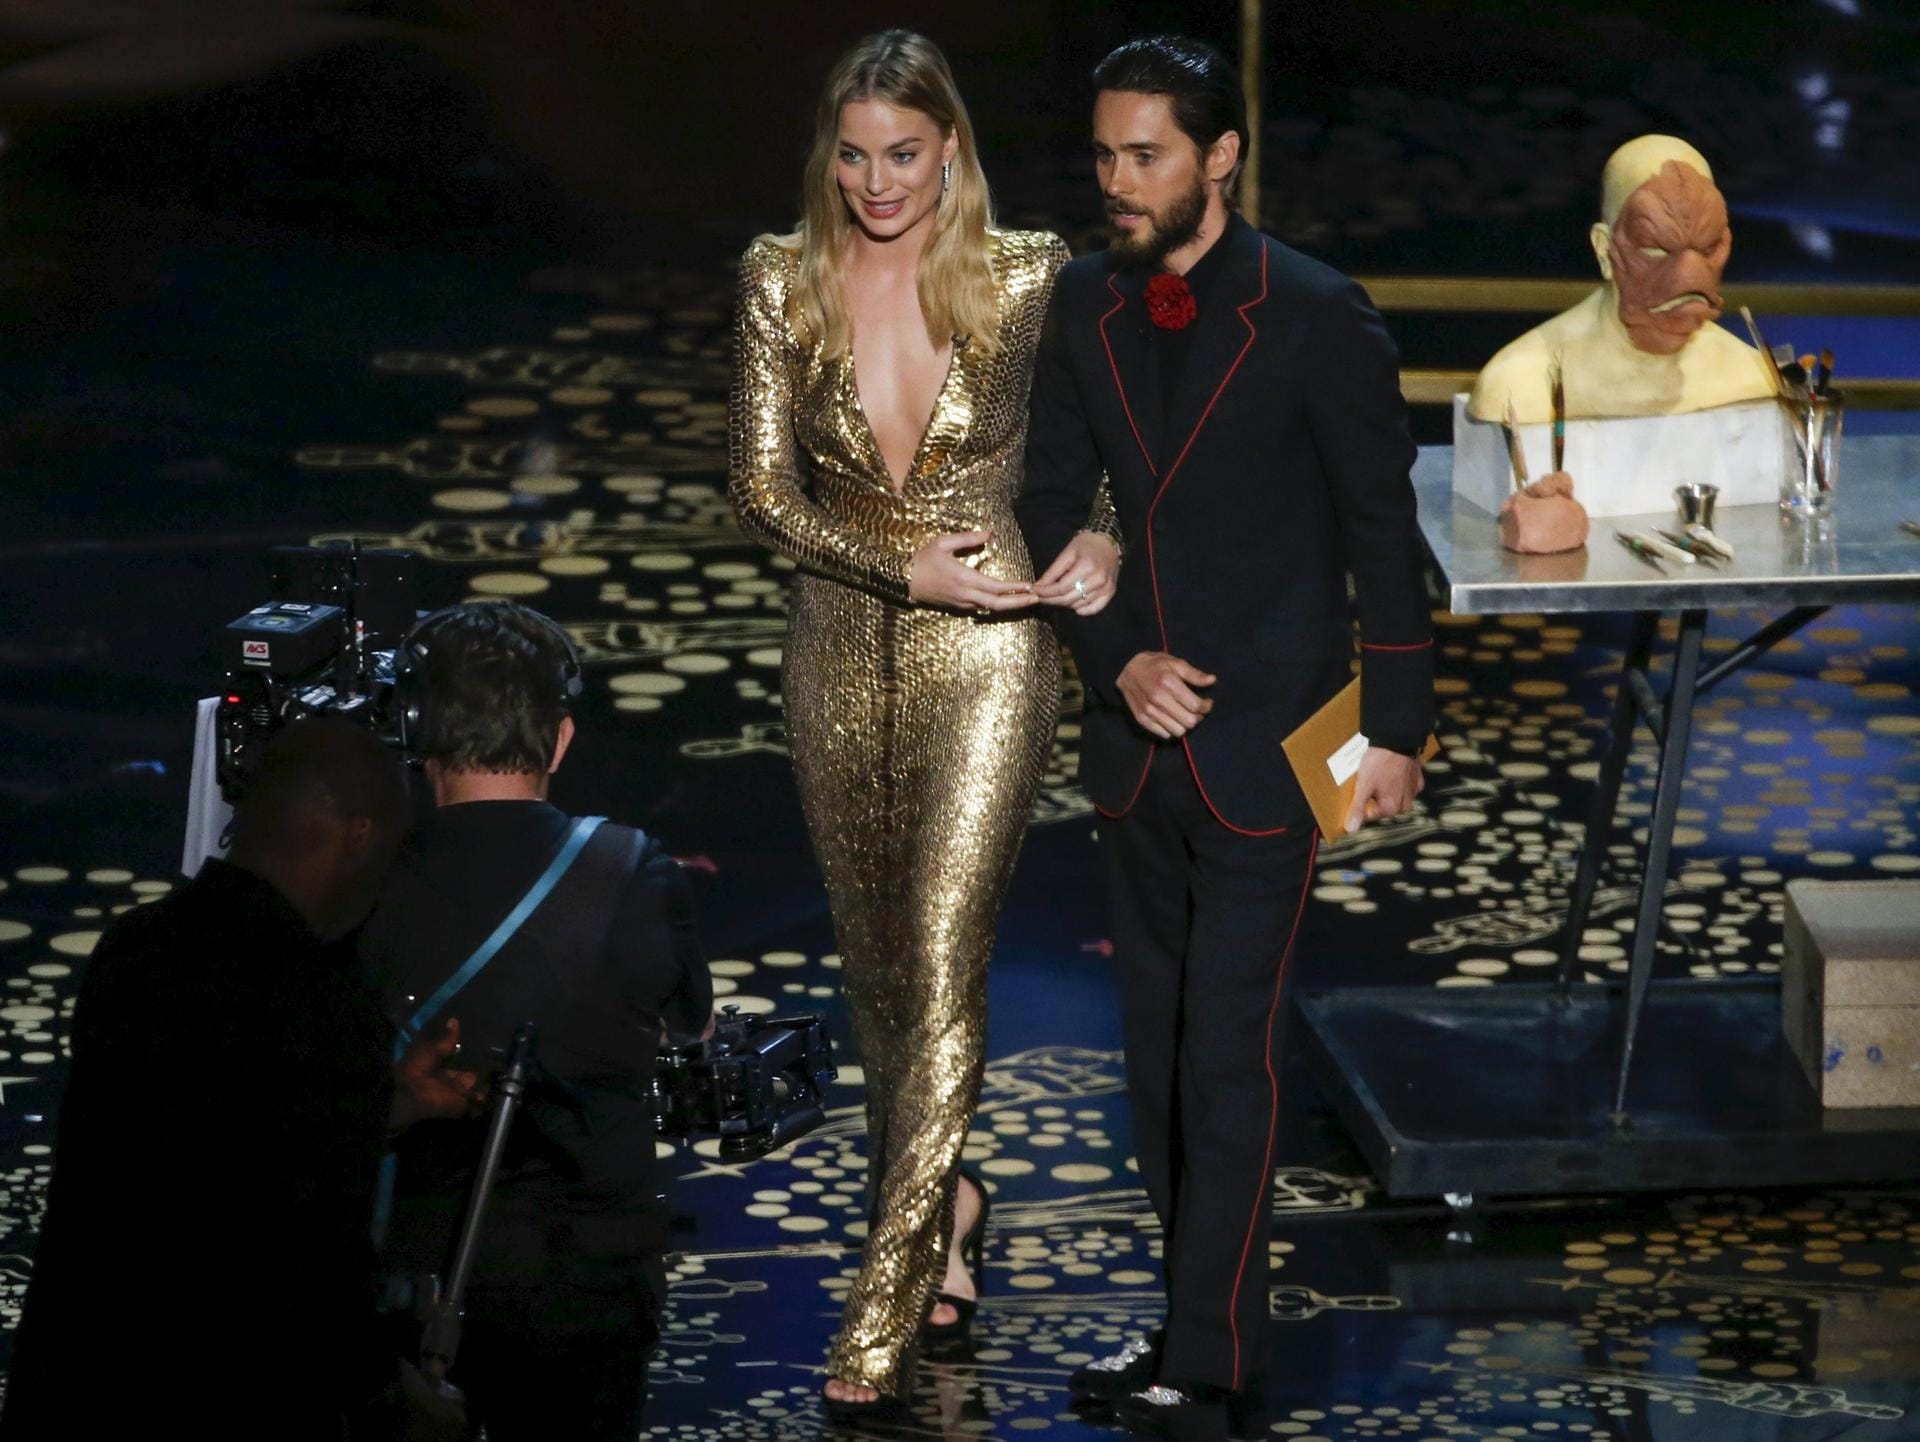 Den Oscar für "Bestes Makeup und Hairstyling" dürfen Margot Robbie und Jared Leto präsentieren.